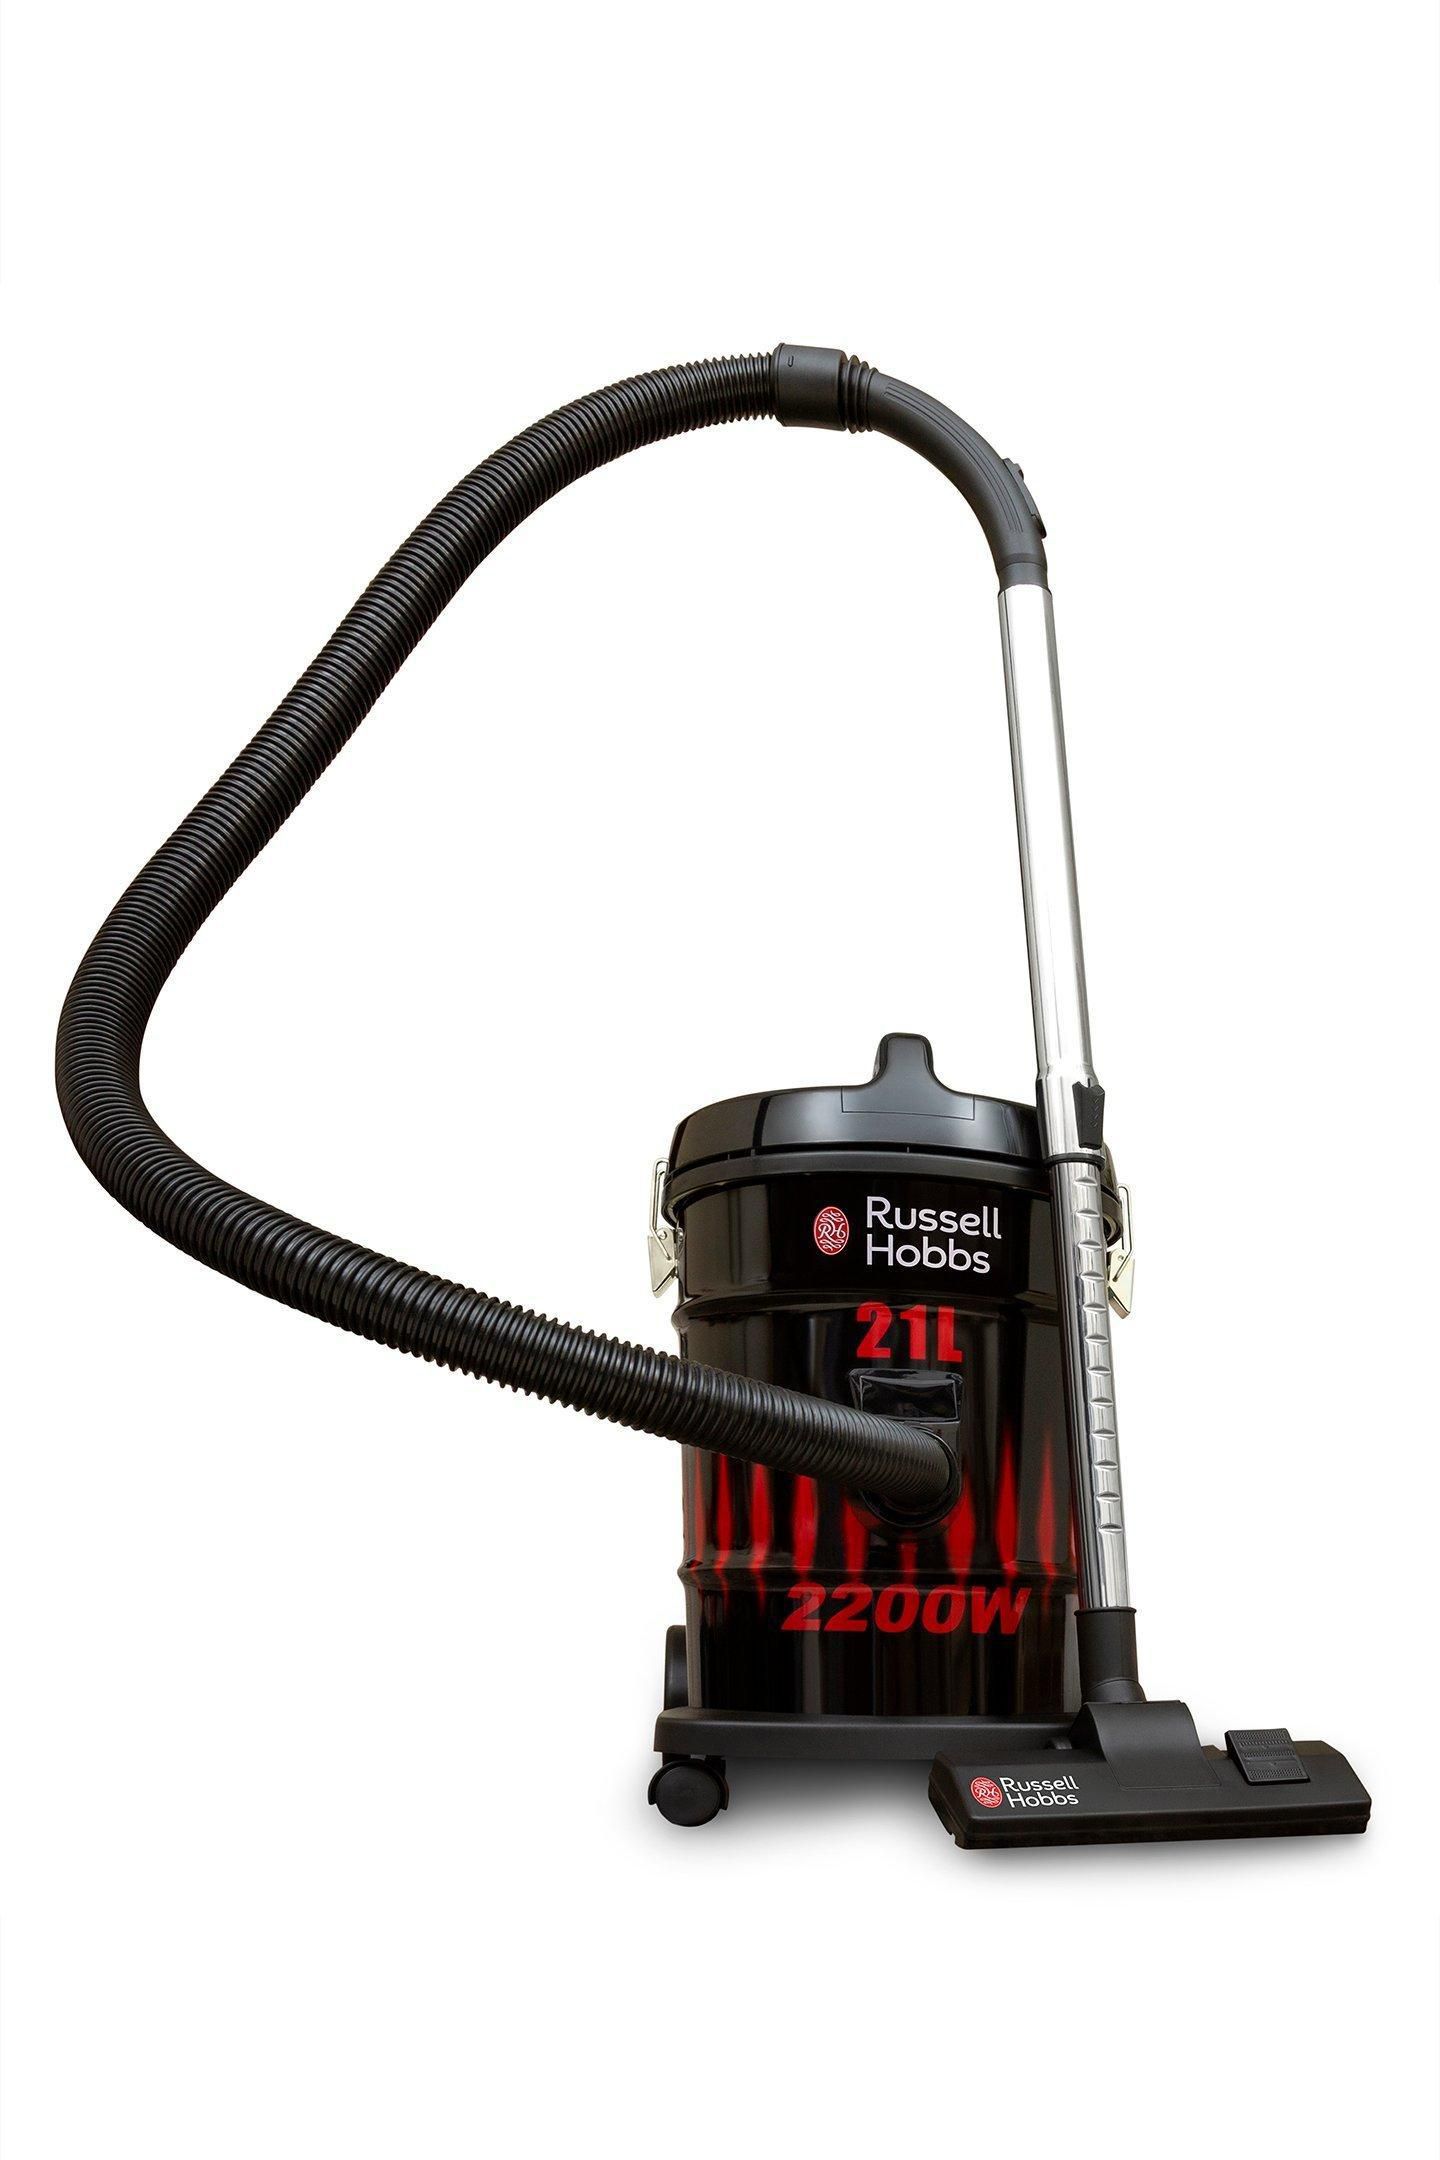 Russell Hobbs Dry Drum Vacuum Cleaner, 21L, 2200W, 5.2m cord,Black